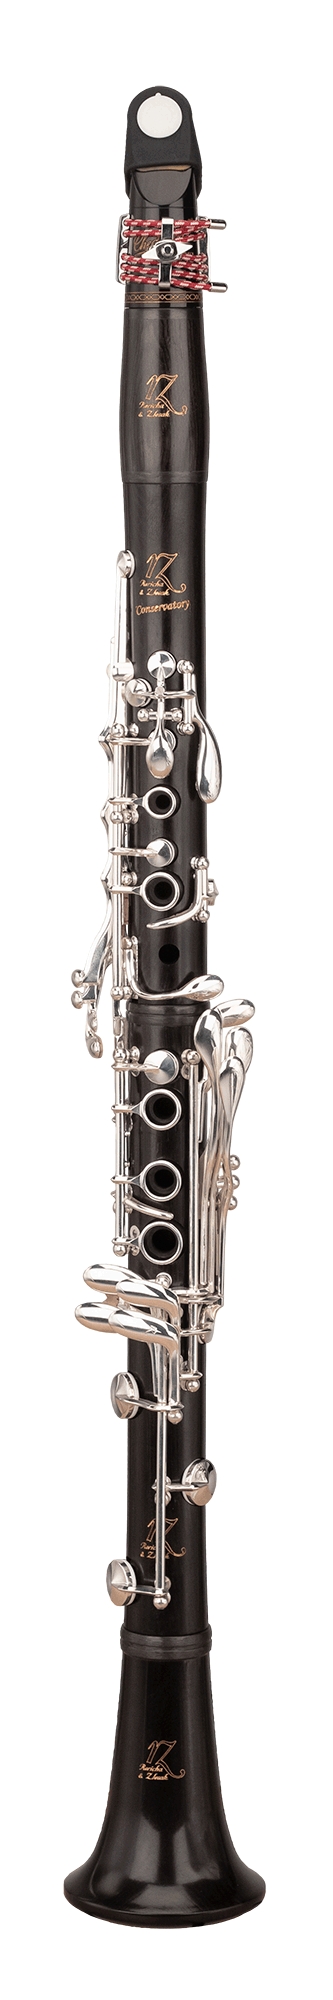 En virkelig god klarinett for gode amatørmusikere til en fordelaktig pris.
Kropp i grenadilla treverk, 18 klaffer/seks ringers klaviatur med dobbelt forsølving.